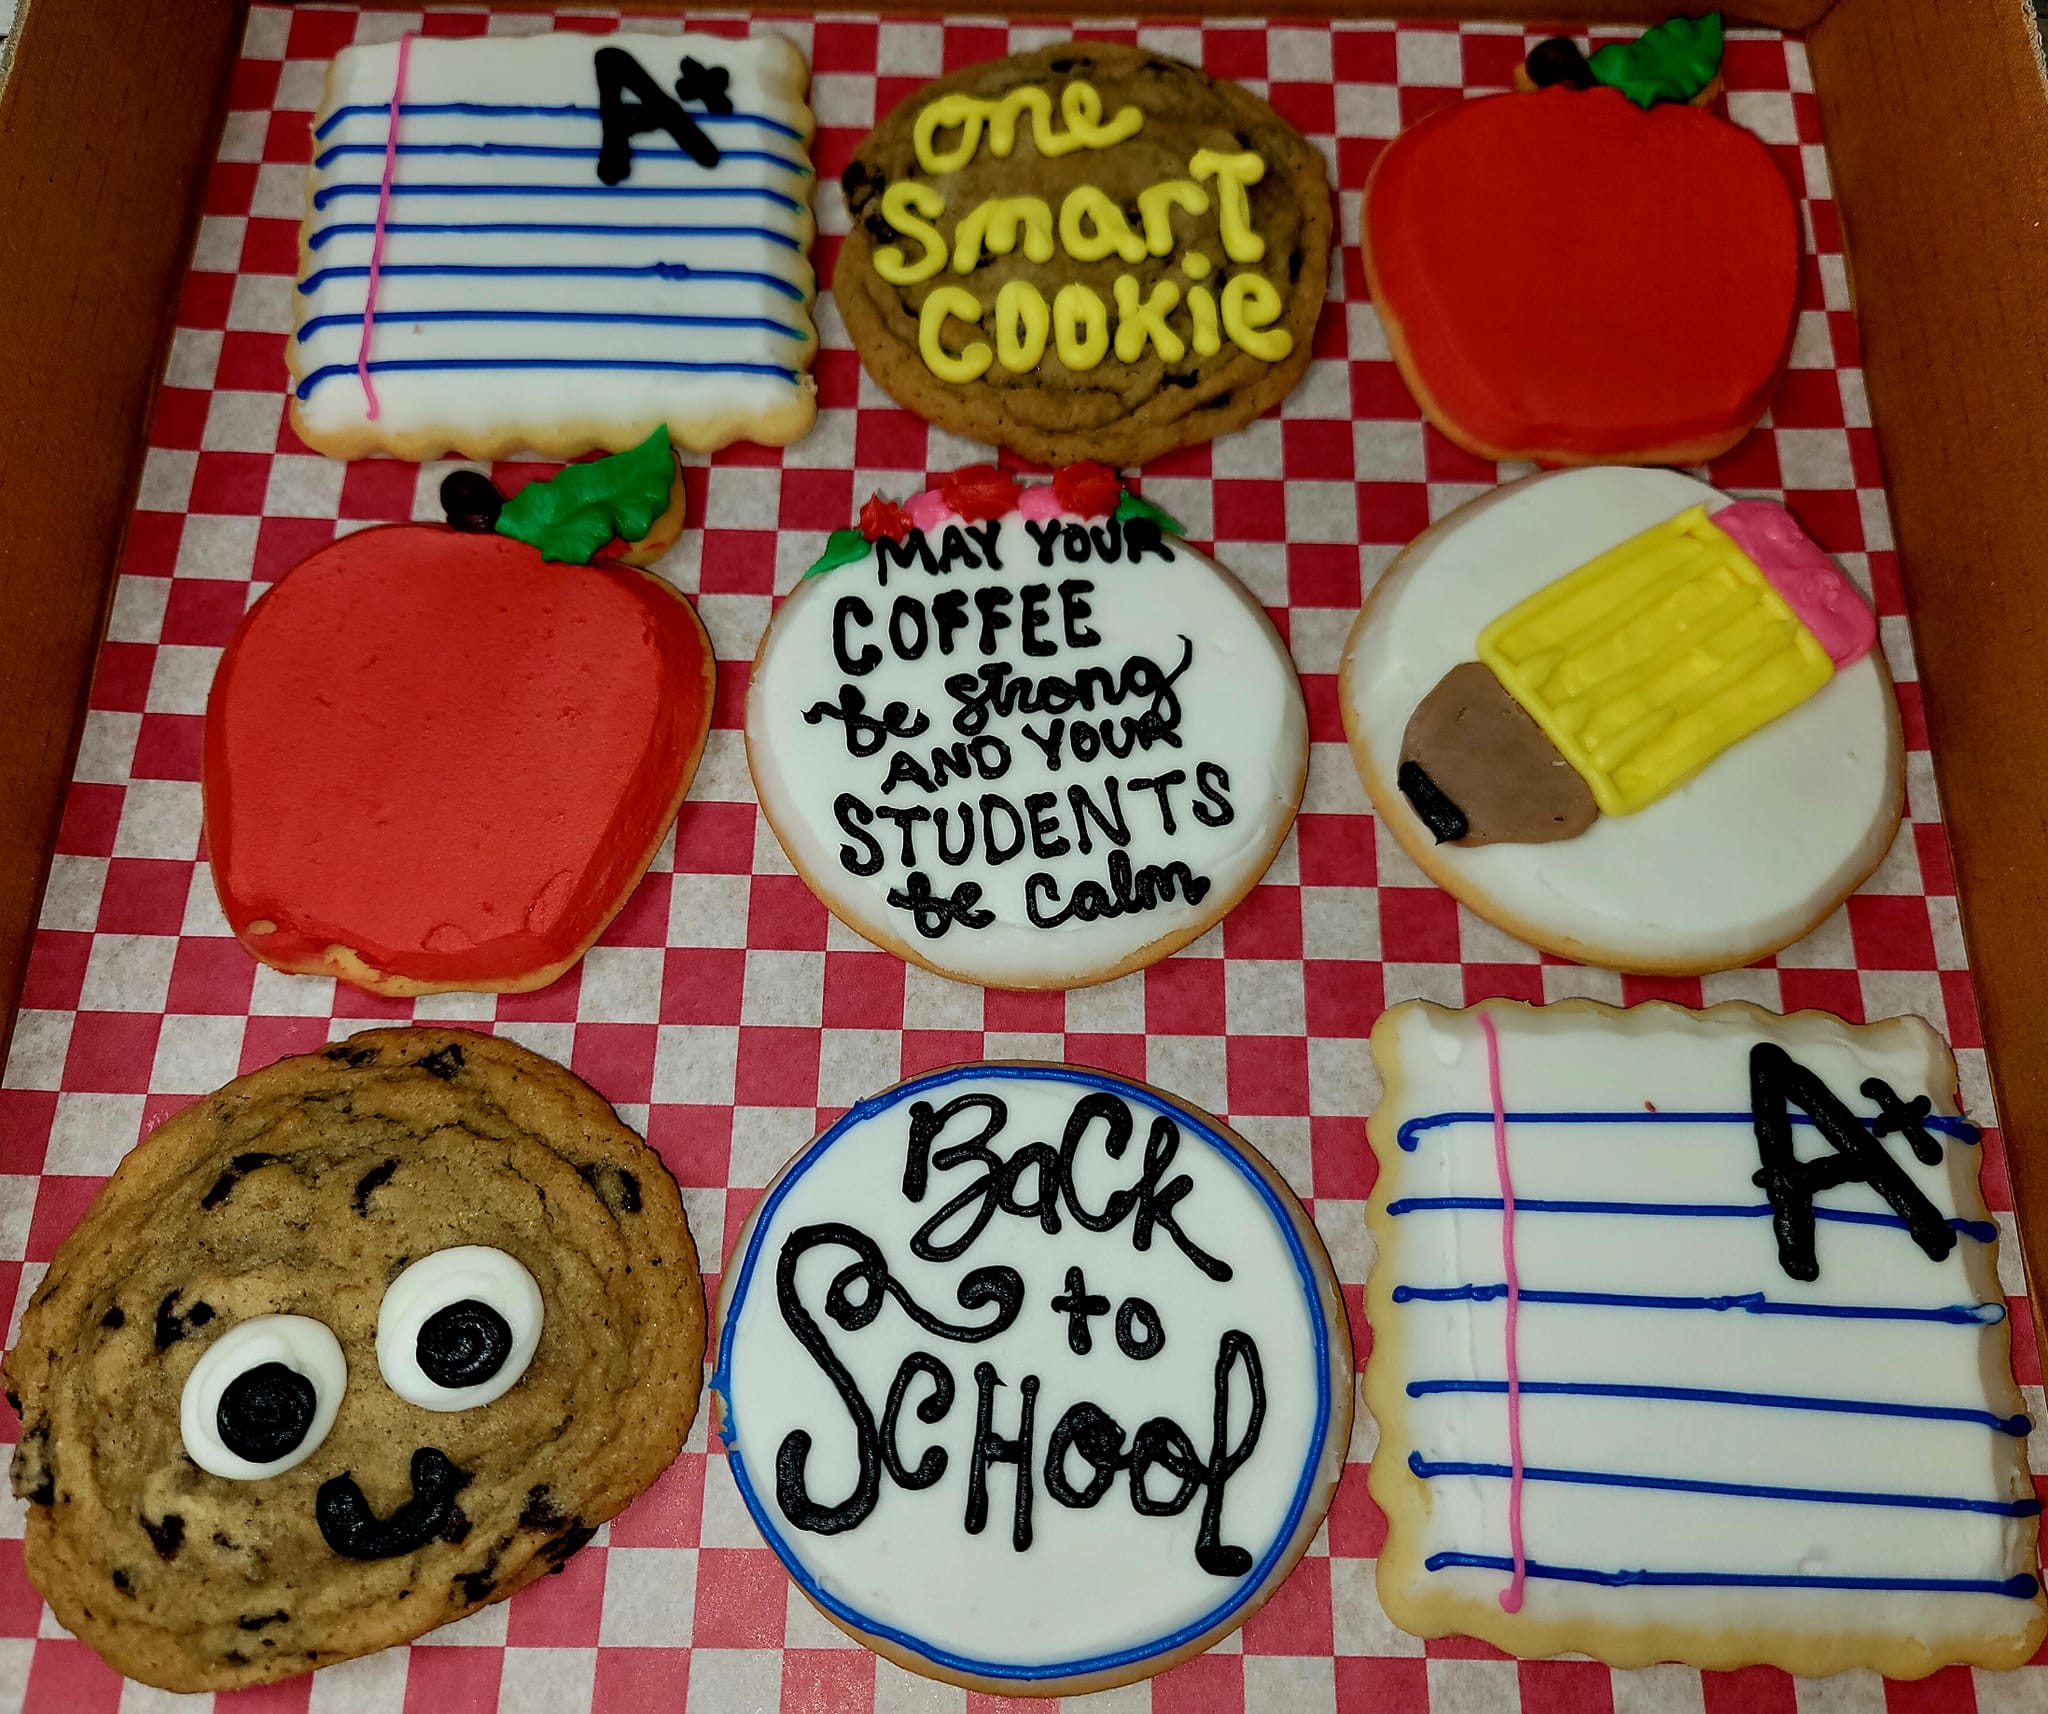 Back to school cookies.